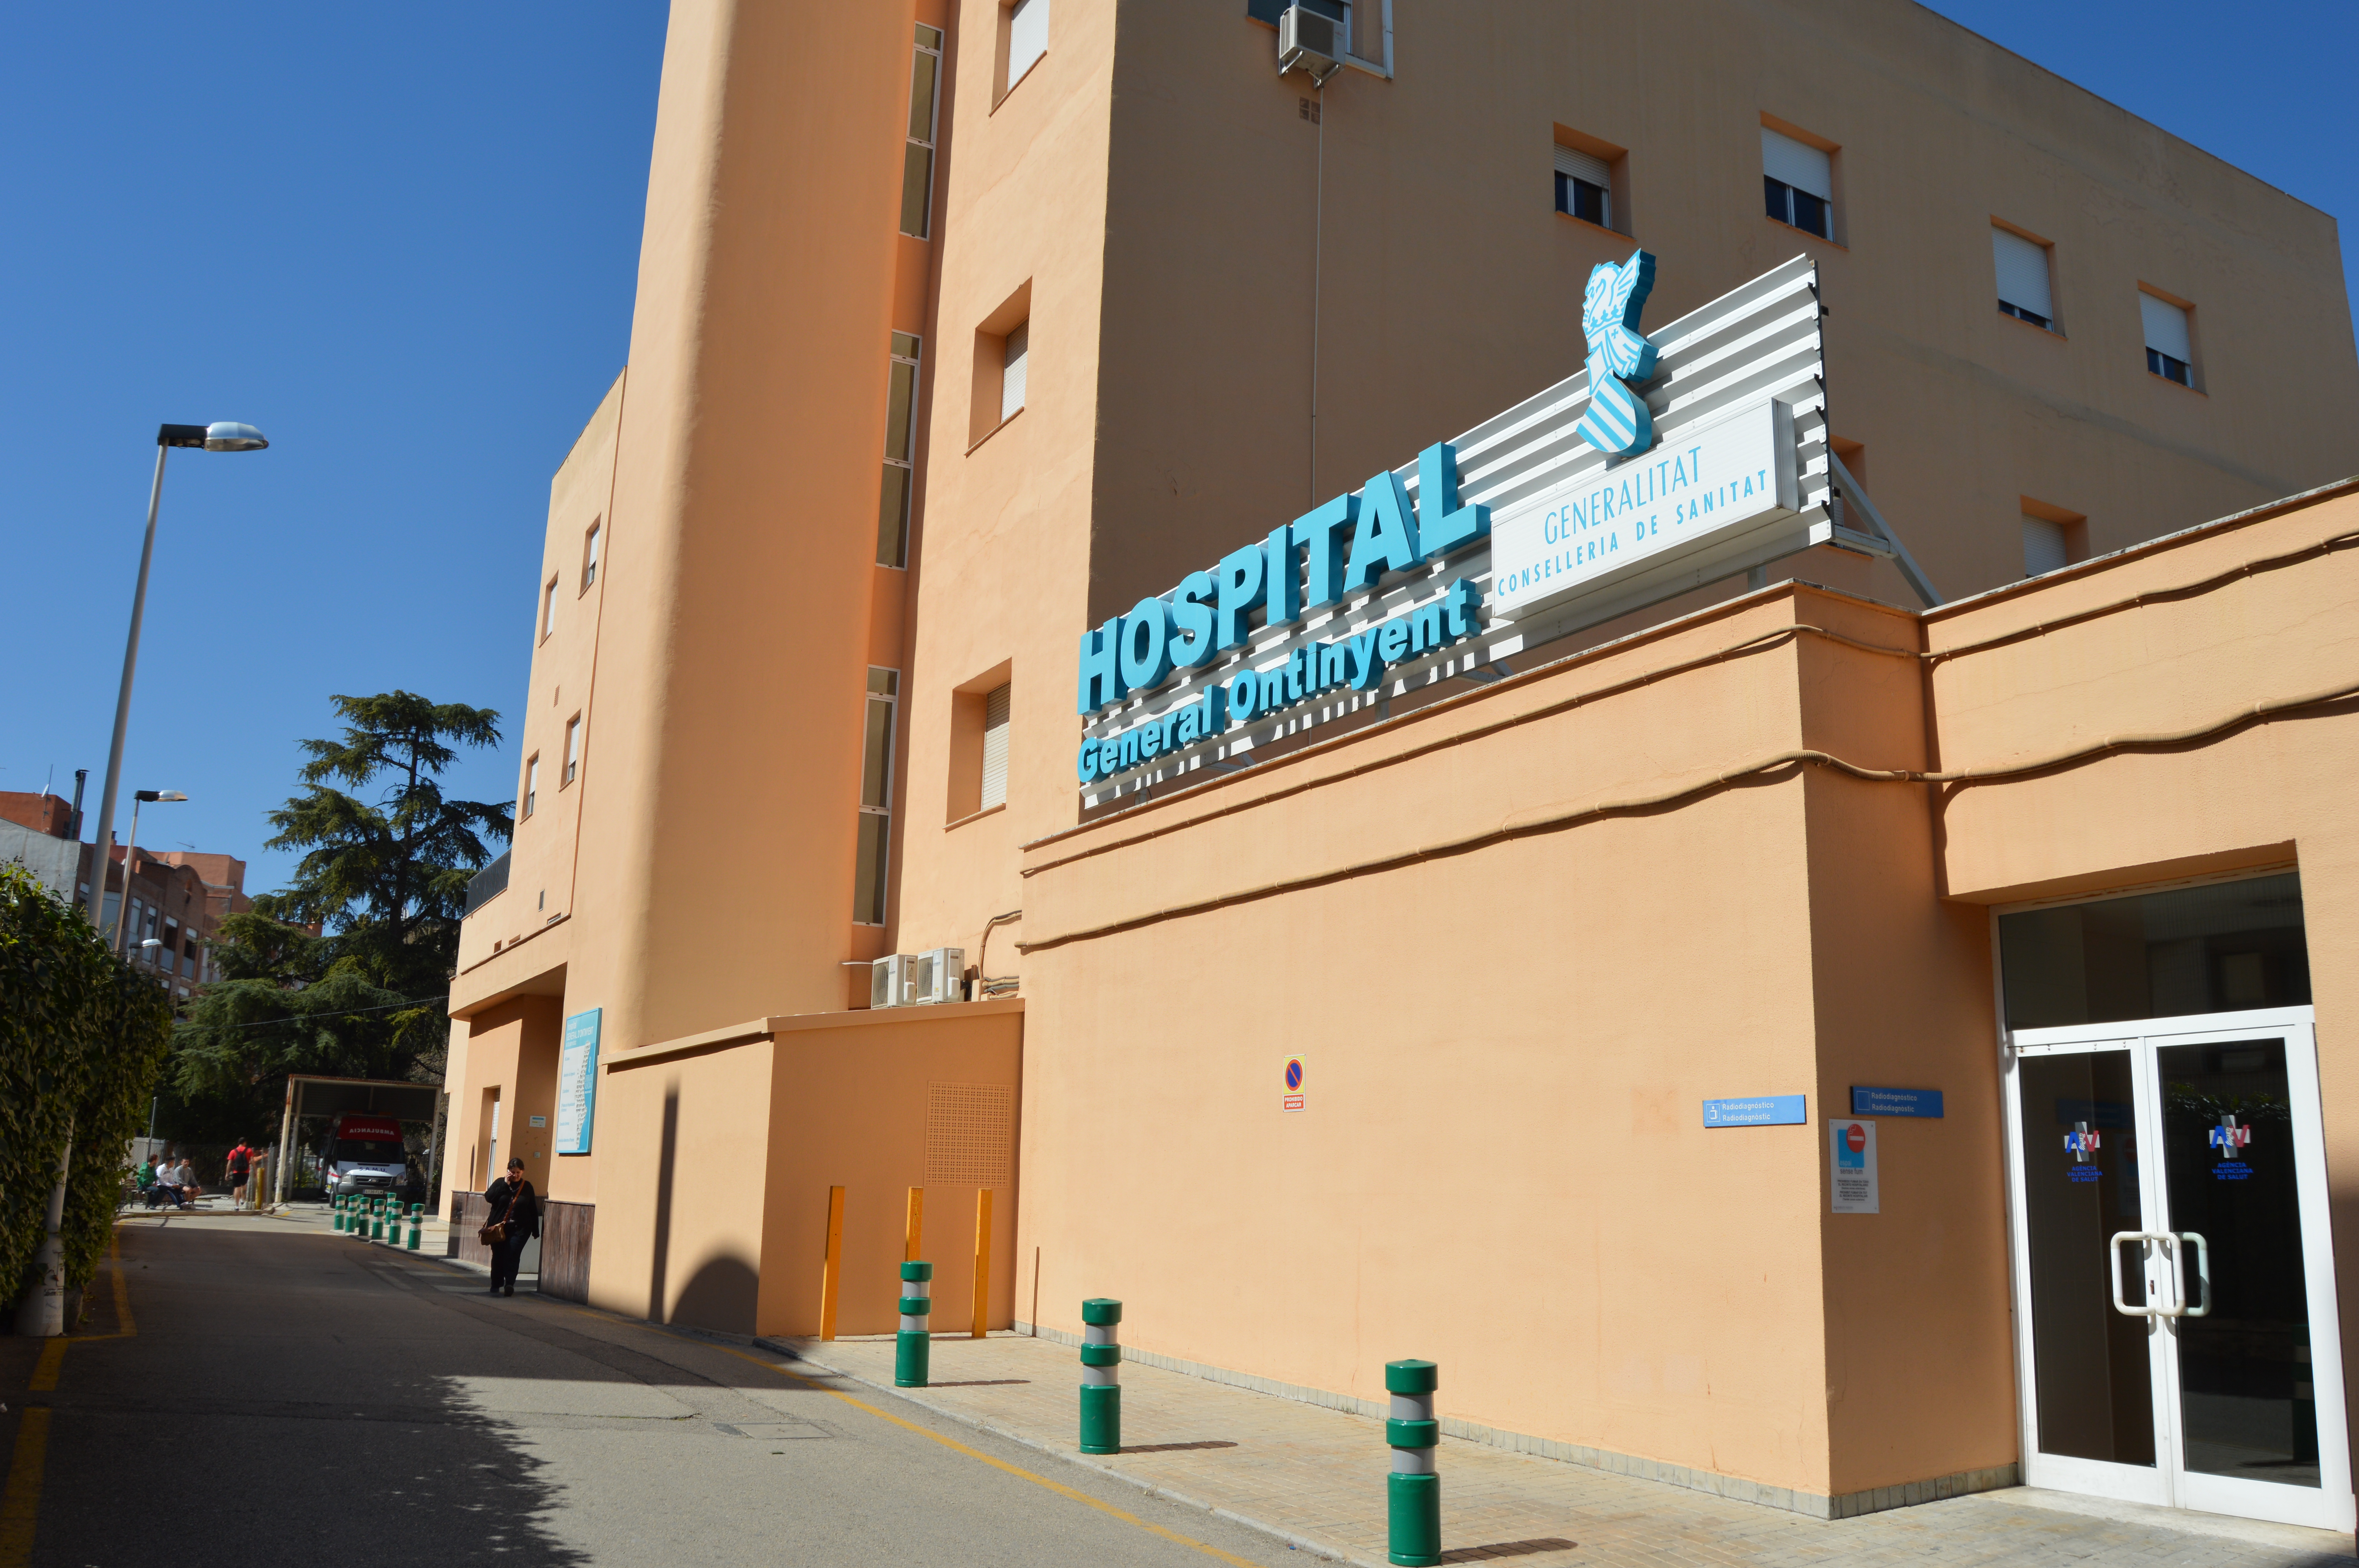 Hospital d'Ontinyent